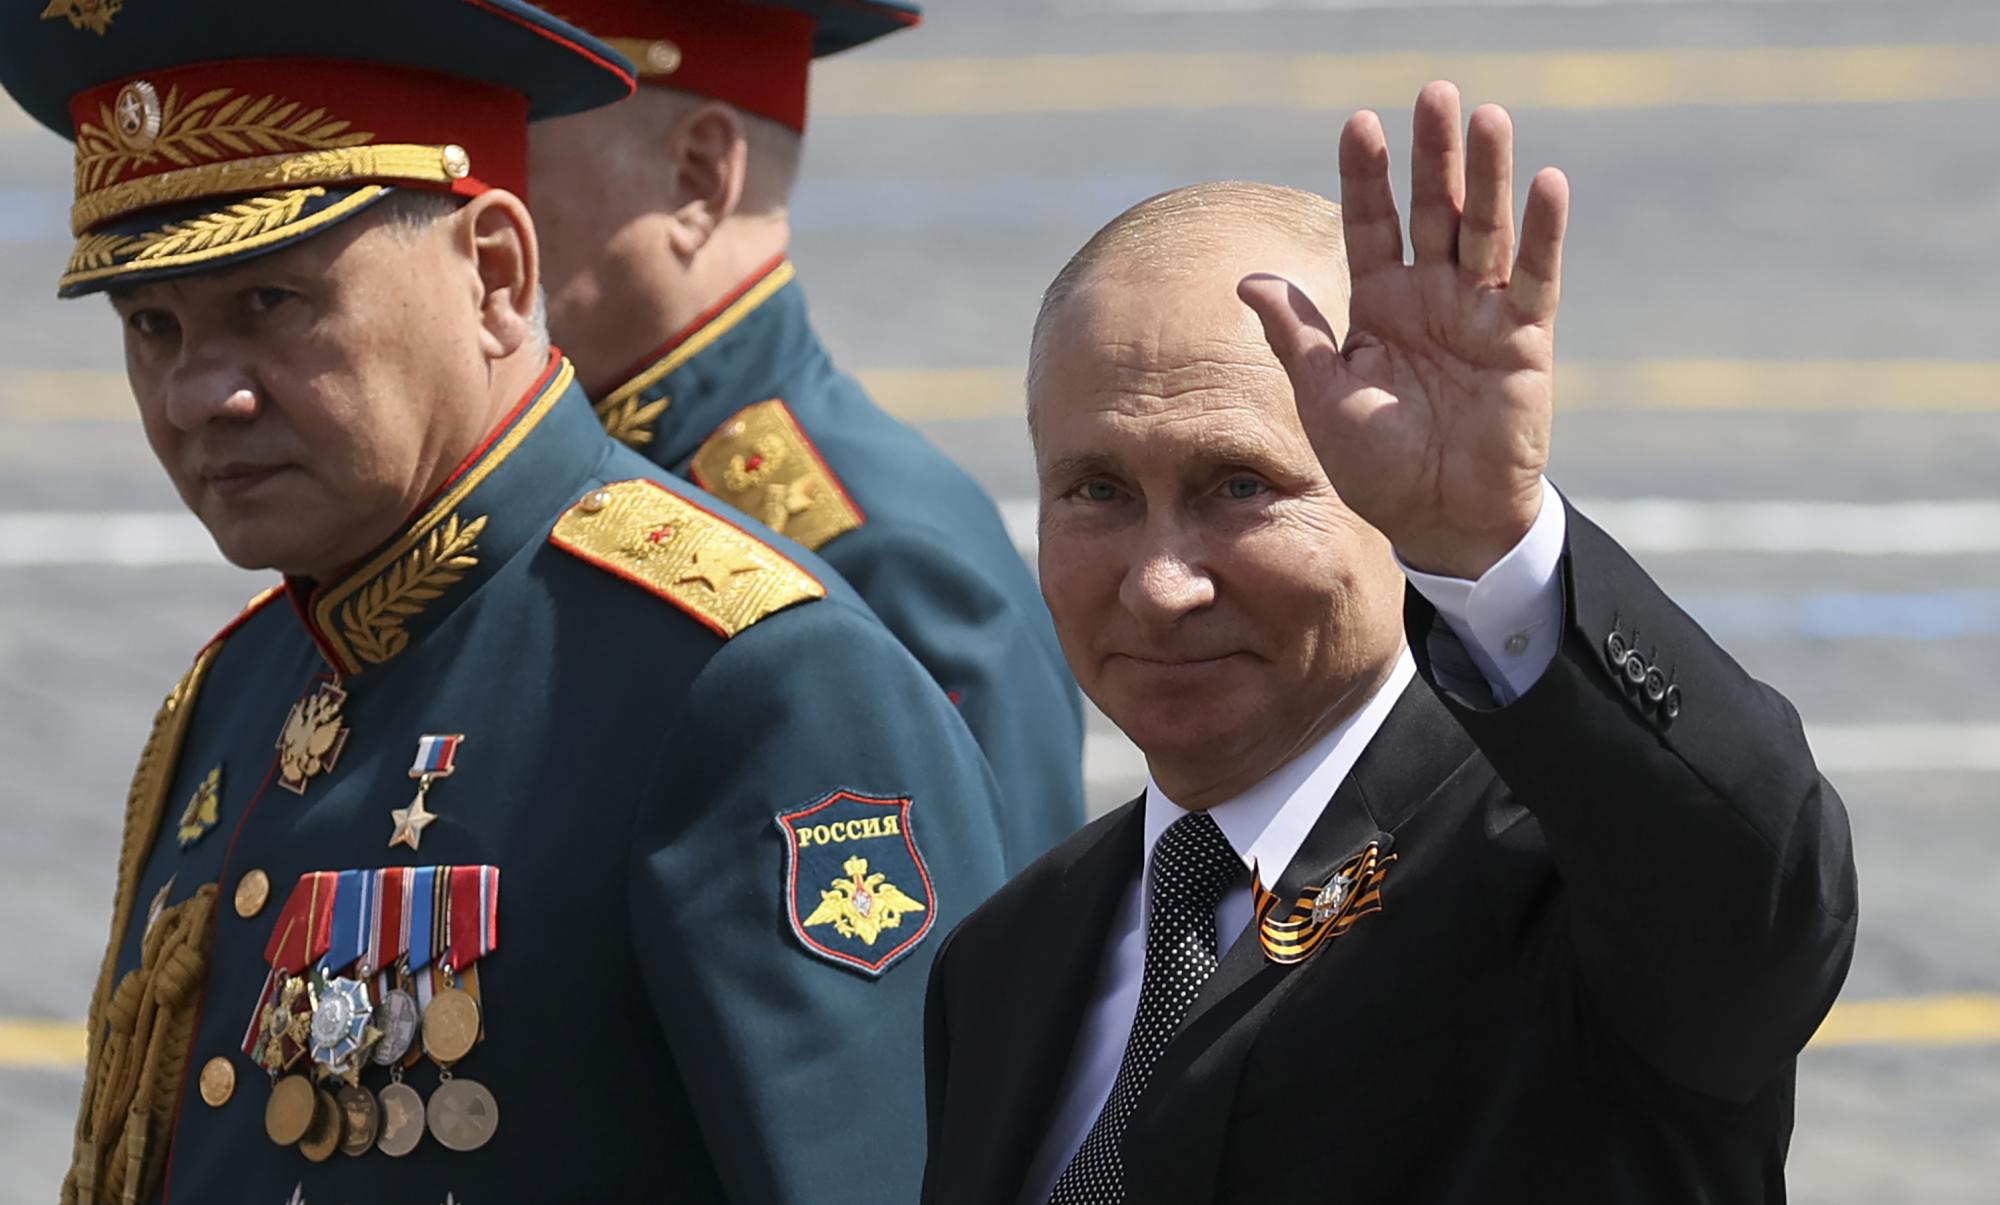 El presidente Vladimir Putin y el ministro de defensa encabezan el desfile militar en la Plaza Roja de Moscú (Yekaterina Shtukina, Sputnik, Kremlin Pool Photo via AP)